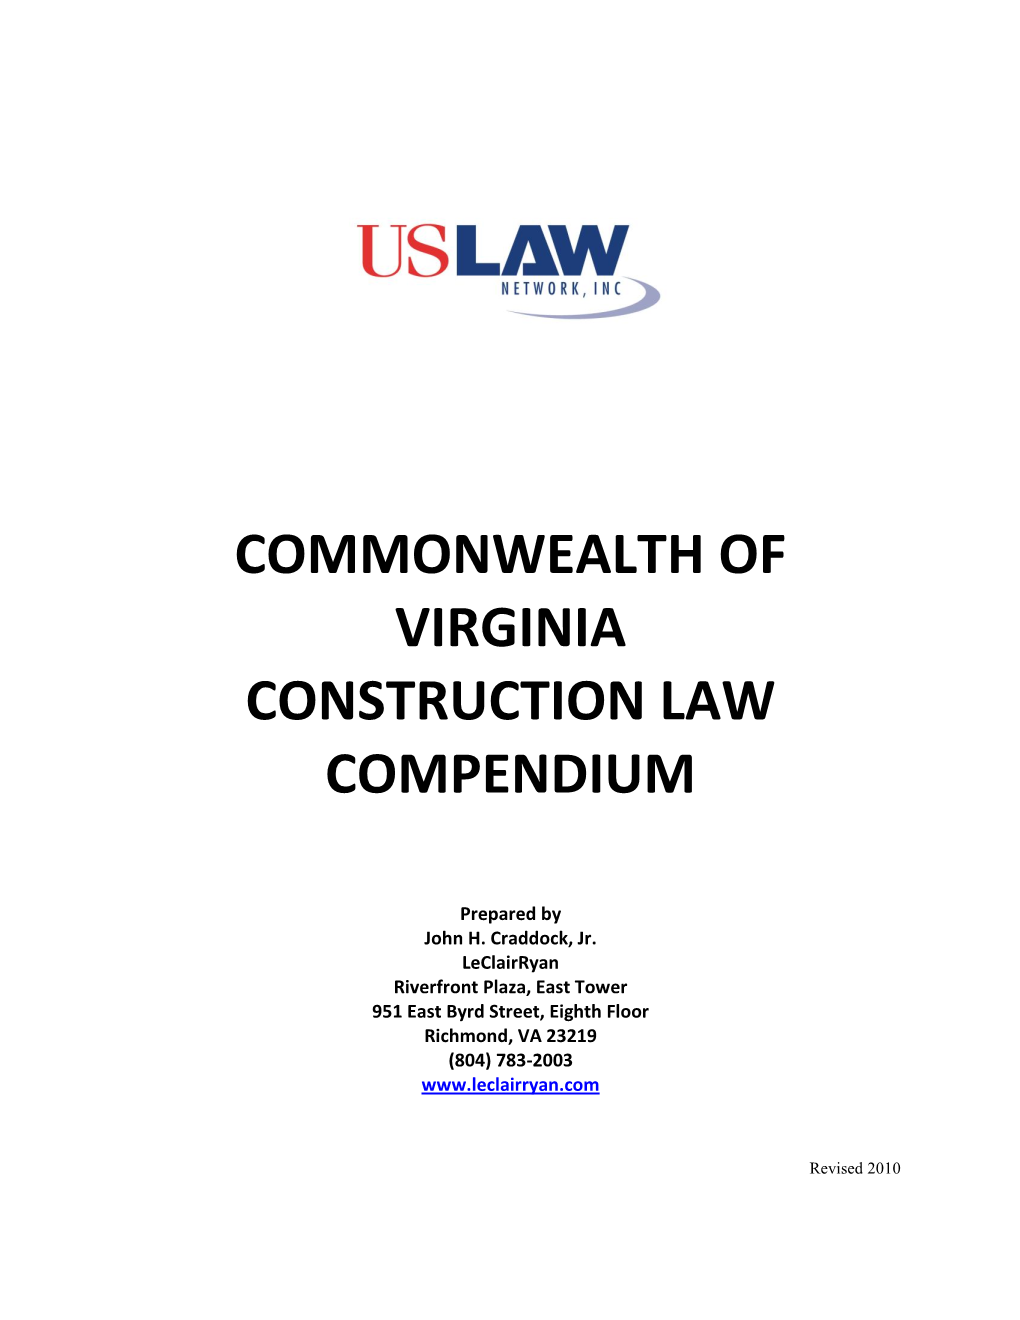 Commonwealth of Virginia Construction Law Compendium